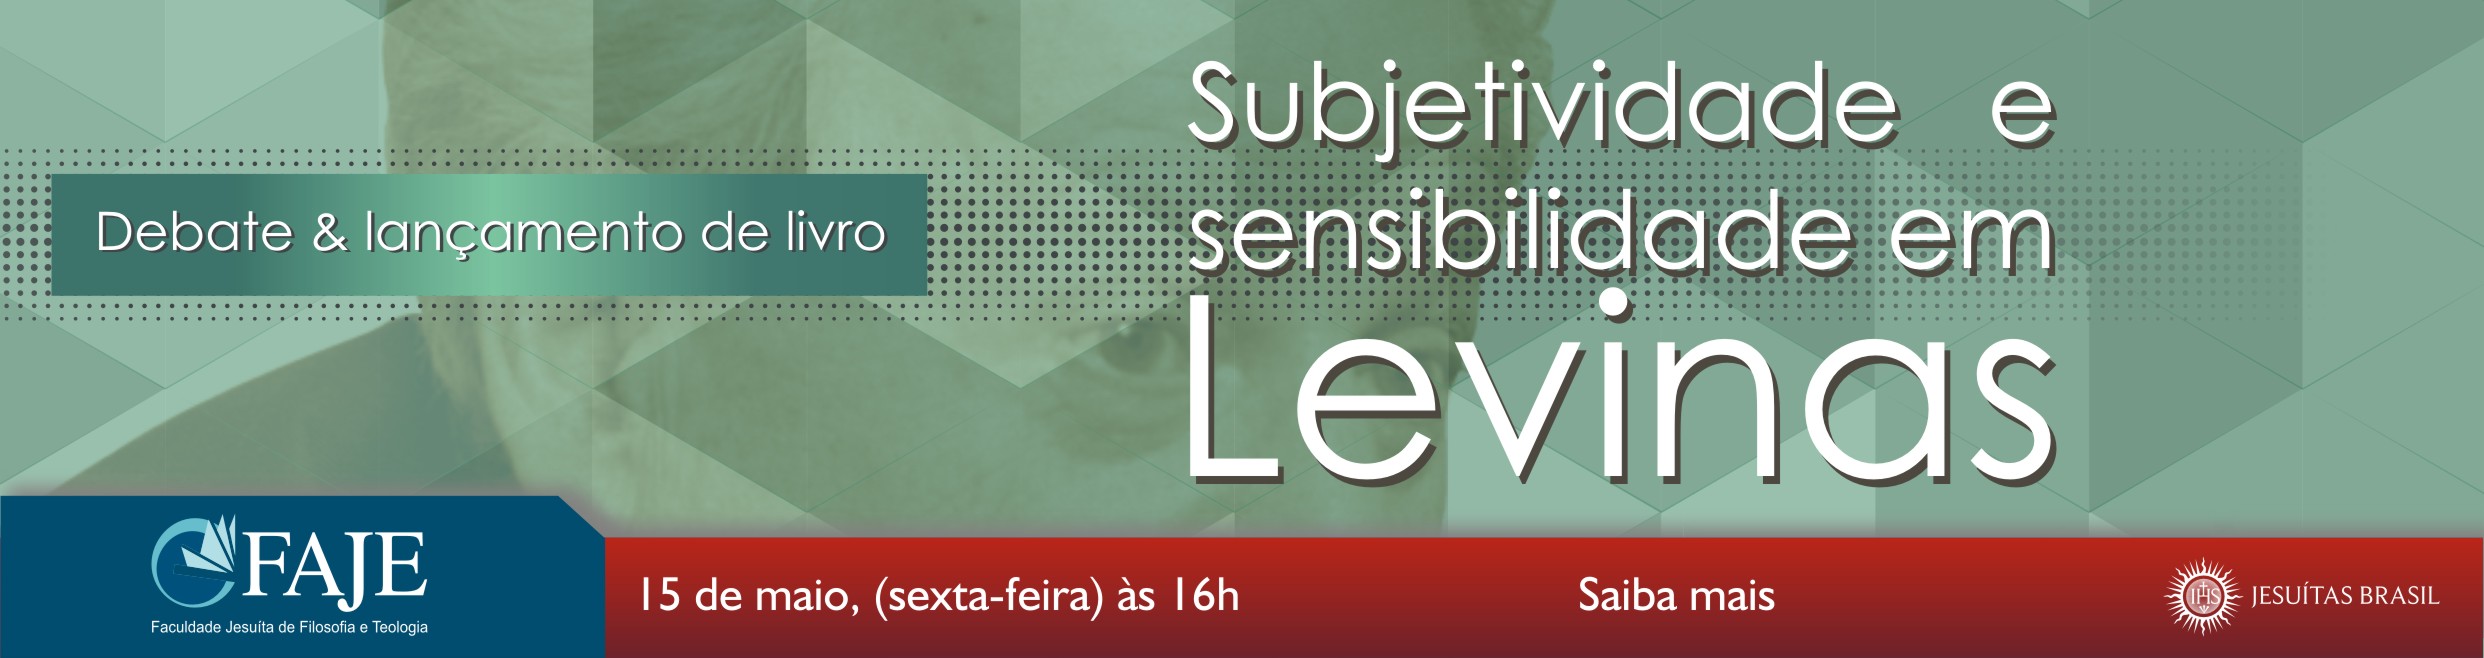 Banner_face_debate_subjetividade_e_sensibilidade_em_levinas